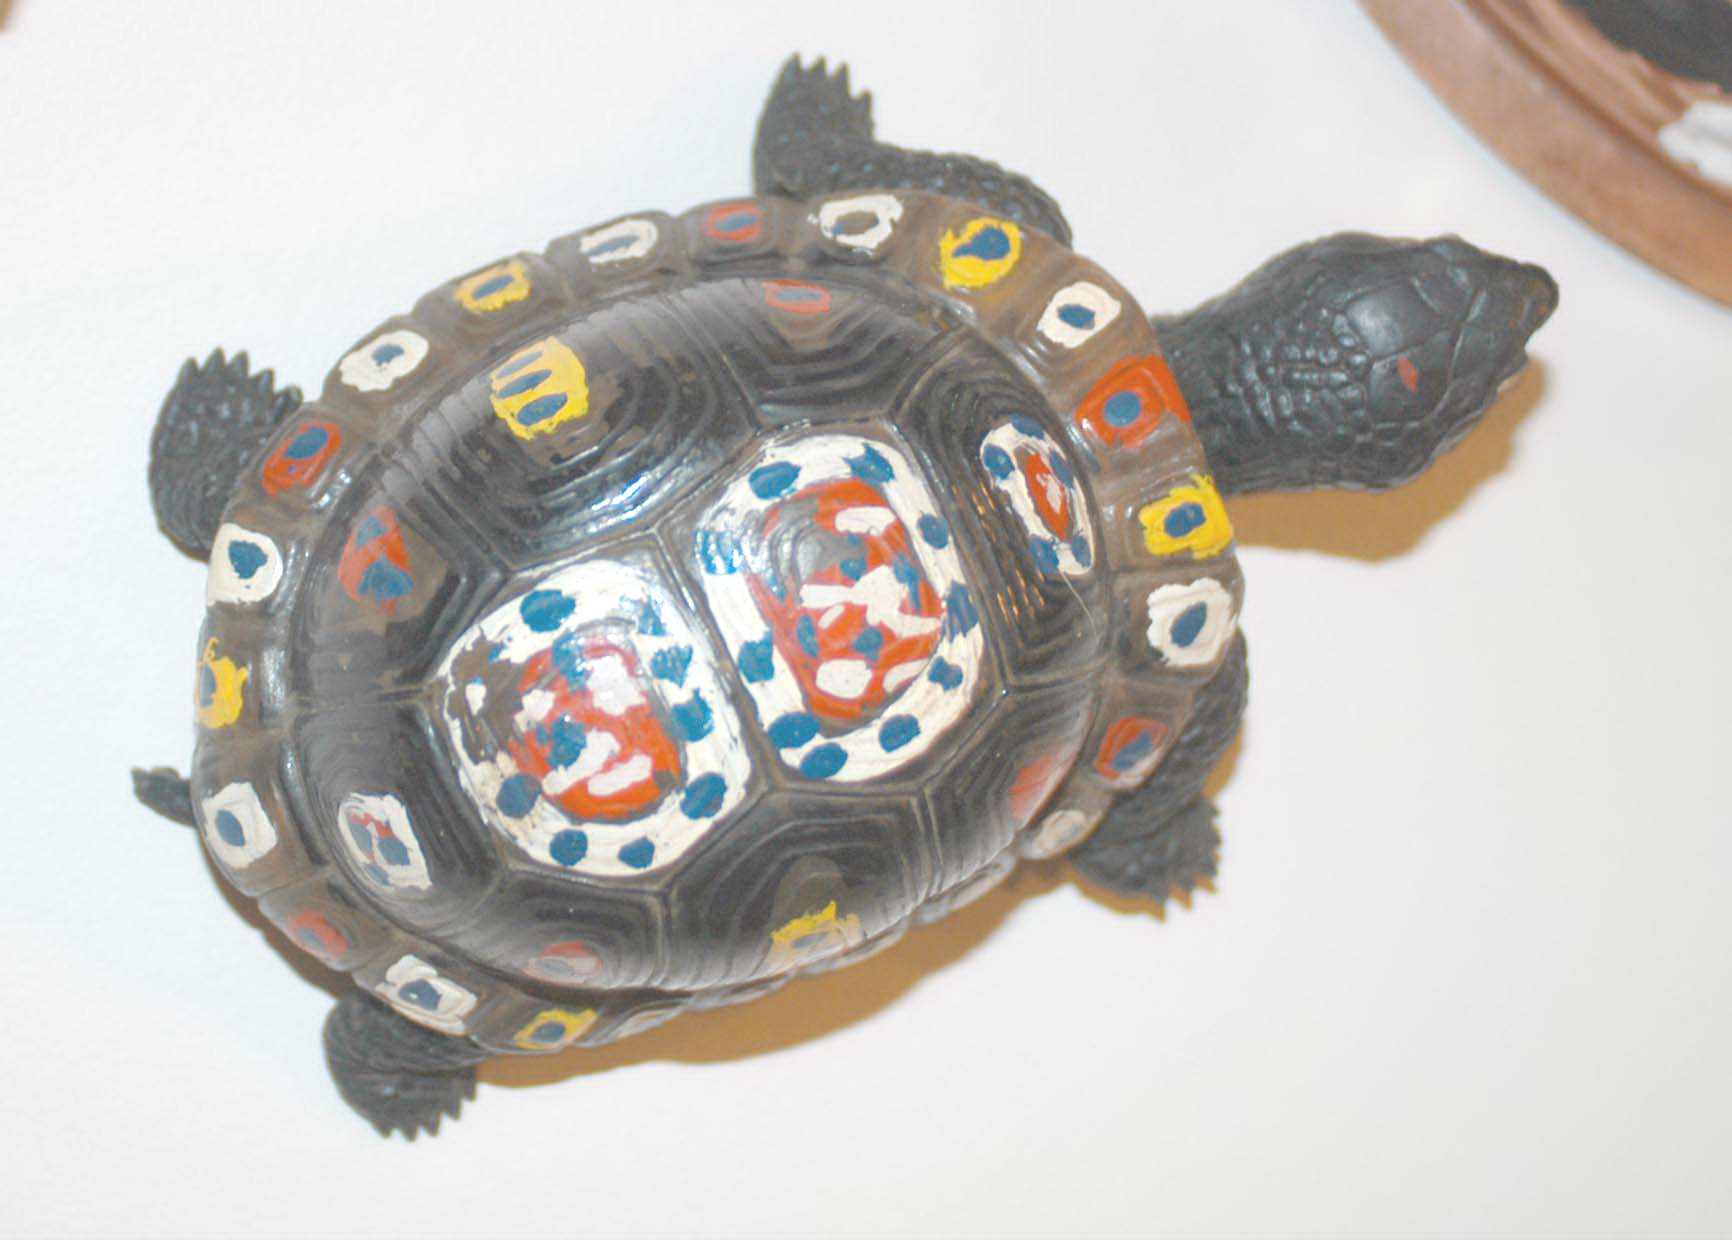 Painted black turtle